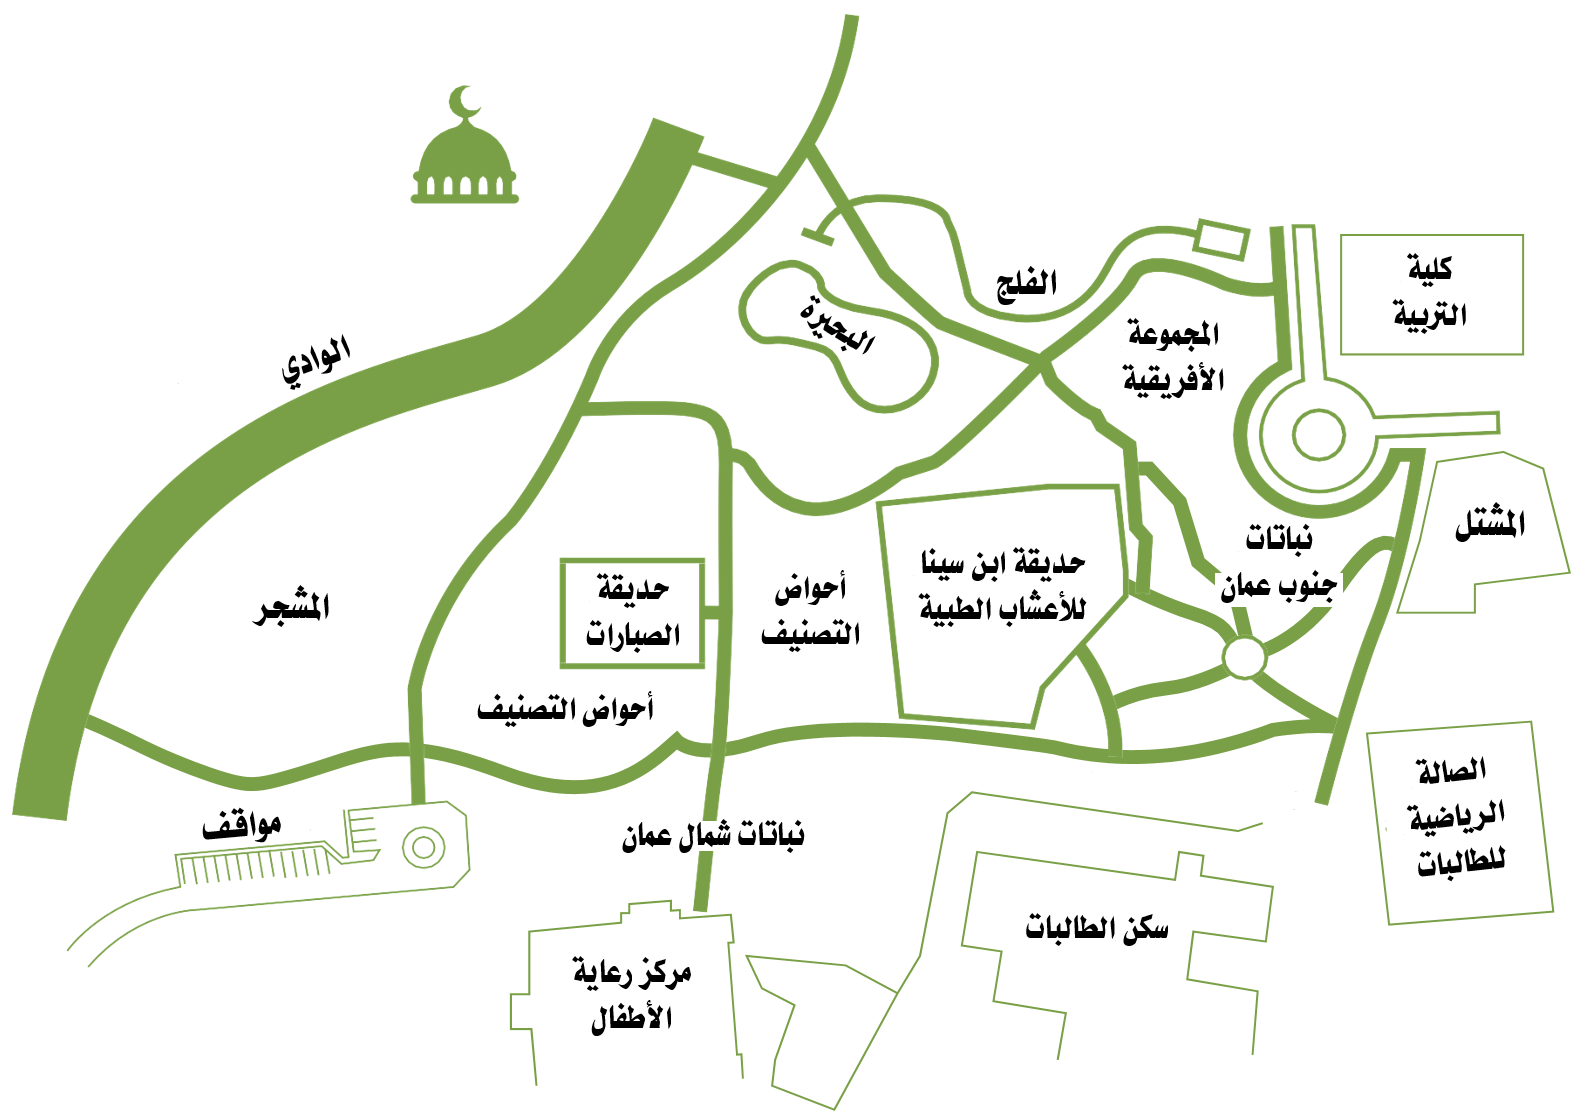 BG Map (Arabic)